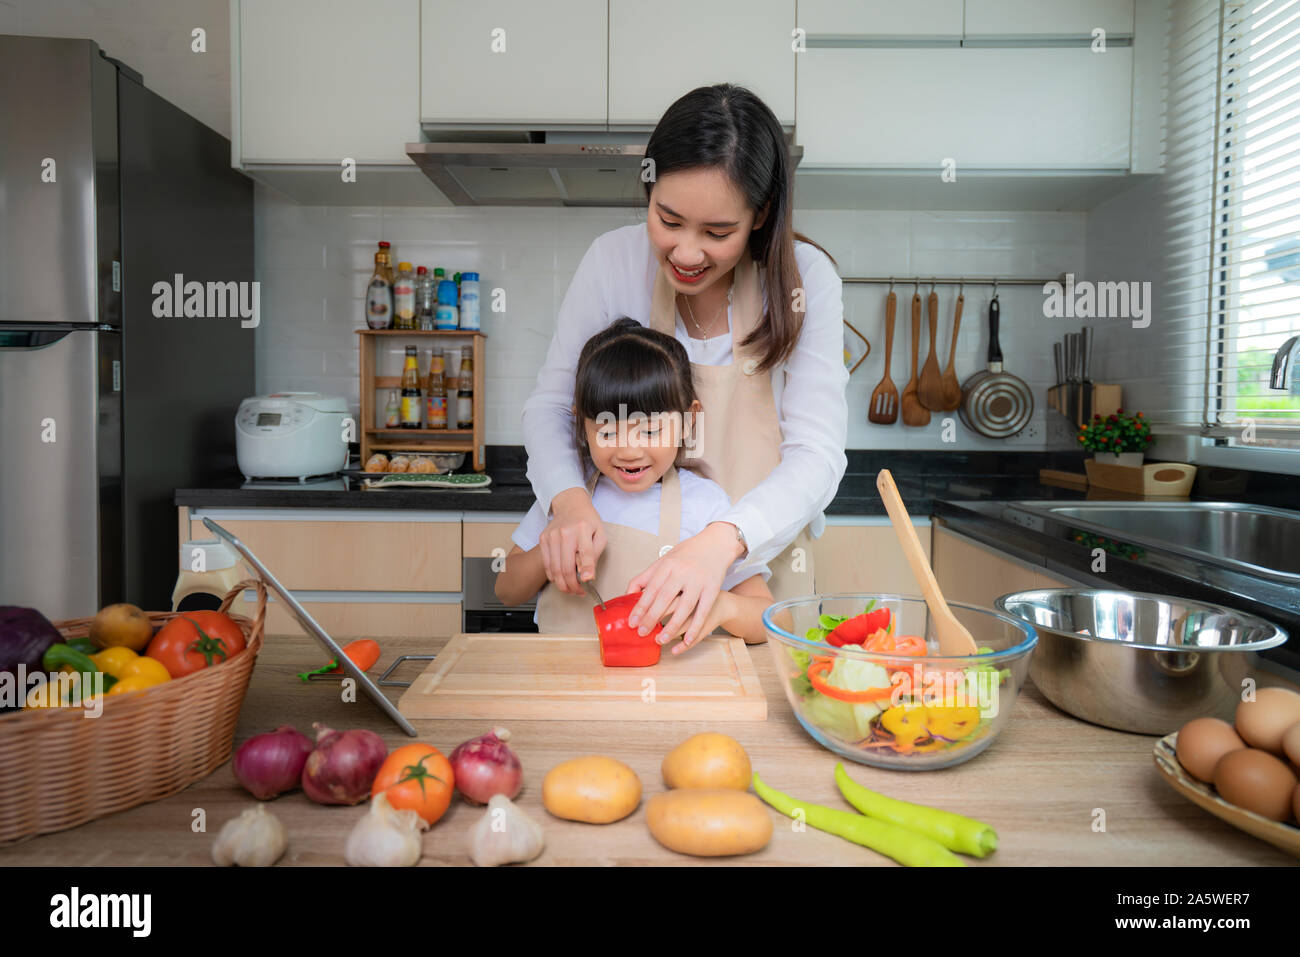 Portrait von schöne asiatische junge Frau und ihre Tochter kochen Salat zum Mittagessen und Schneiden rote Glocke Peper, während sie essen, Familie leben Liebe Relati Stockfoto